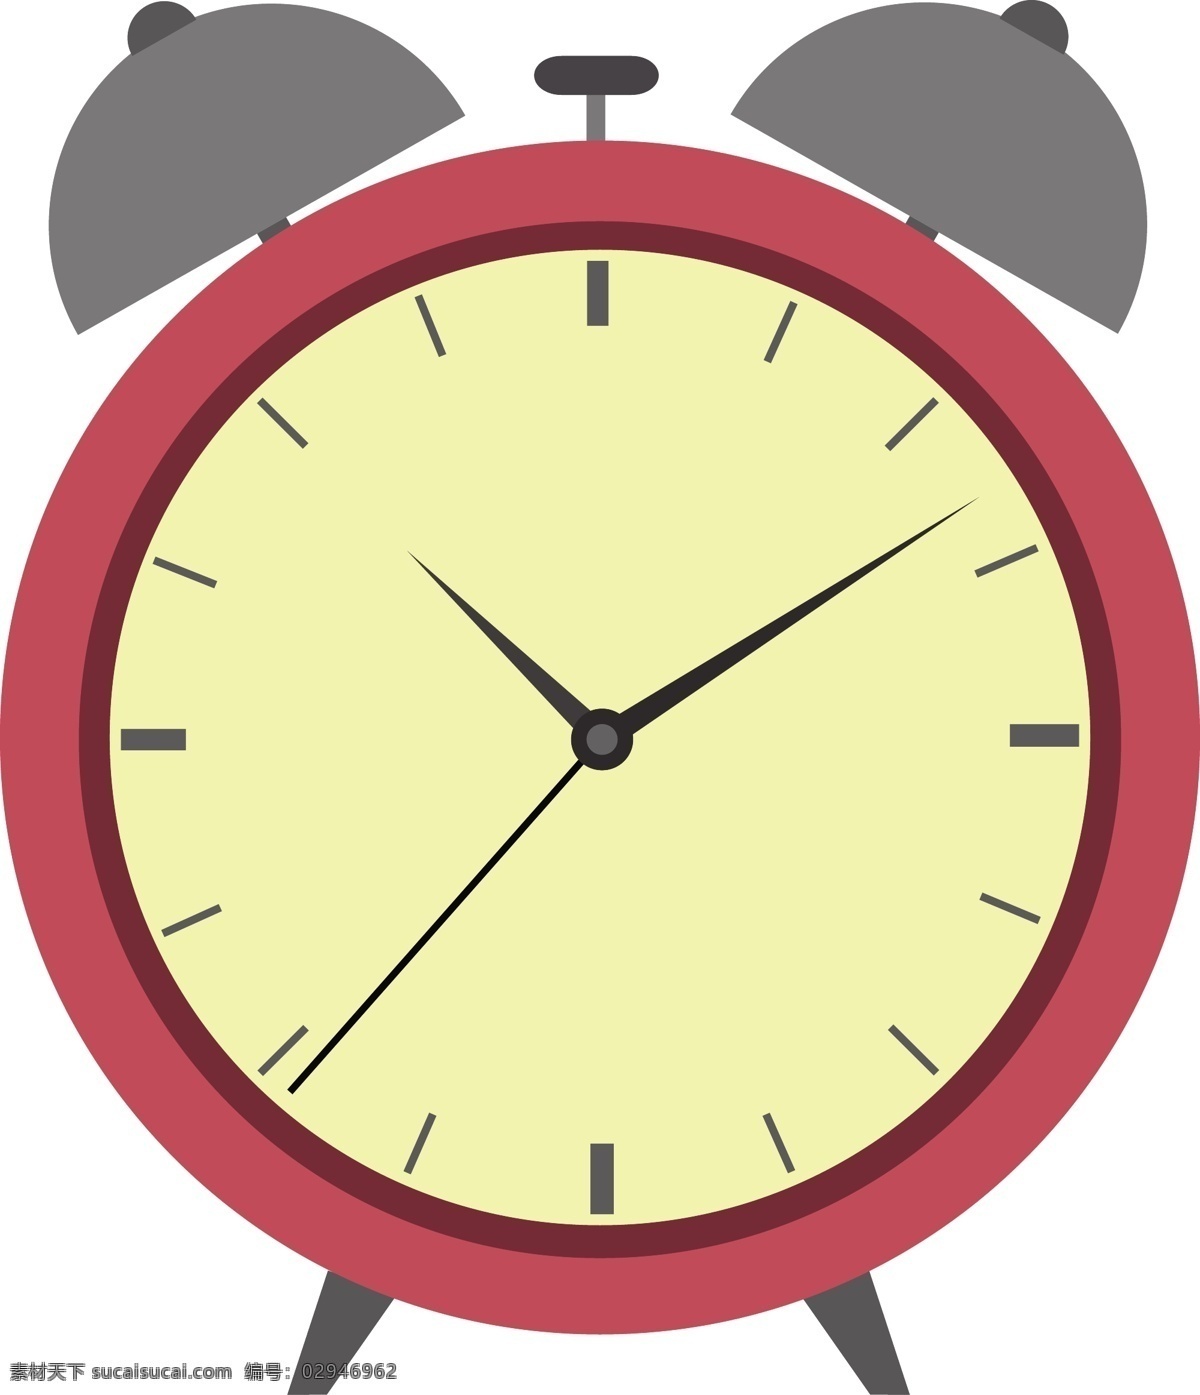 钟表图片 手表 钟表 时间 效率 闹钟 时针 分针 秒针 插图 手绘 插画 ai矢量